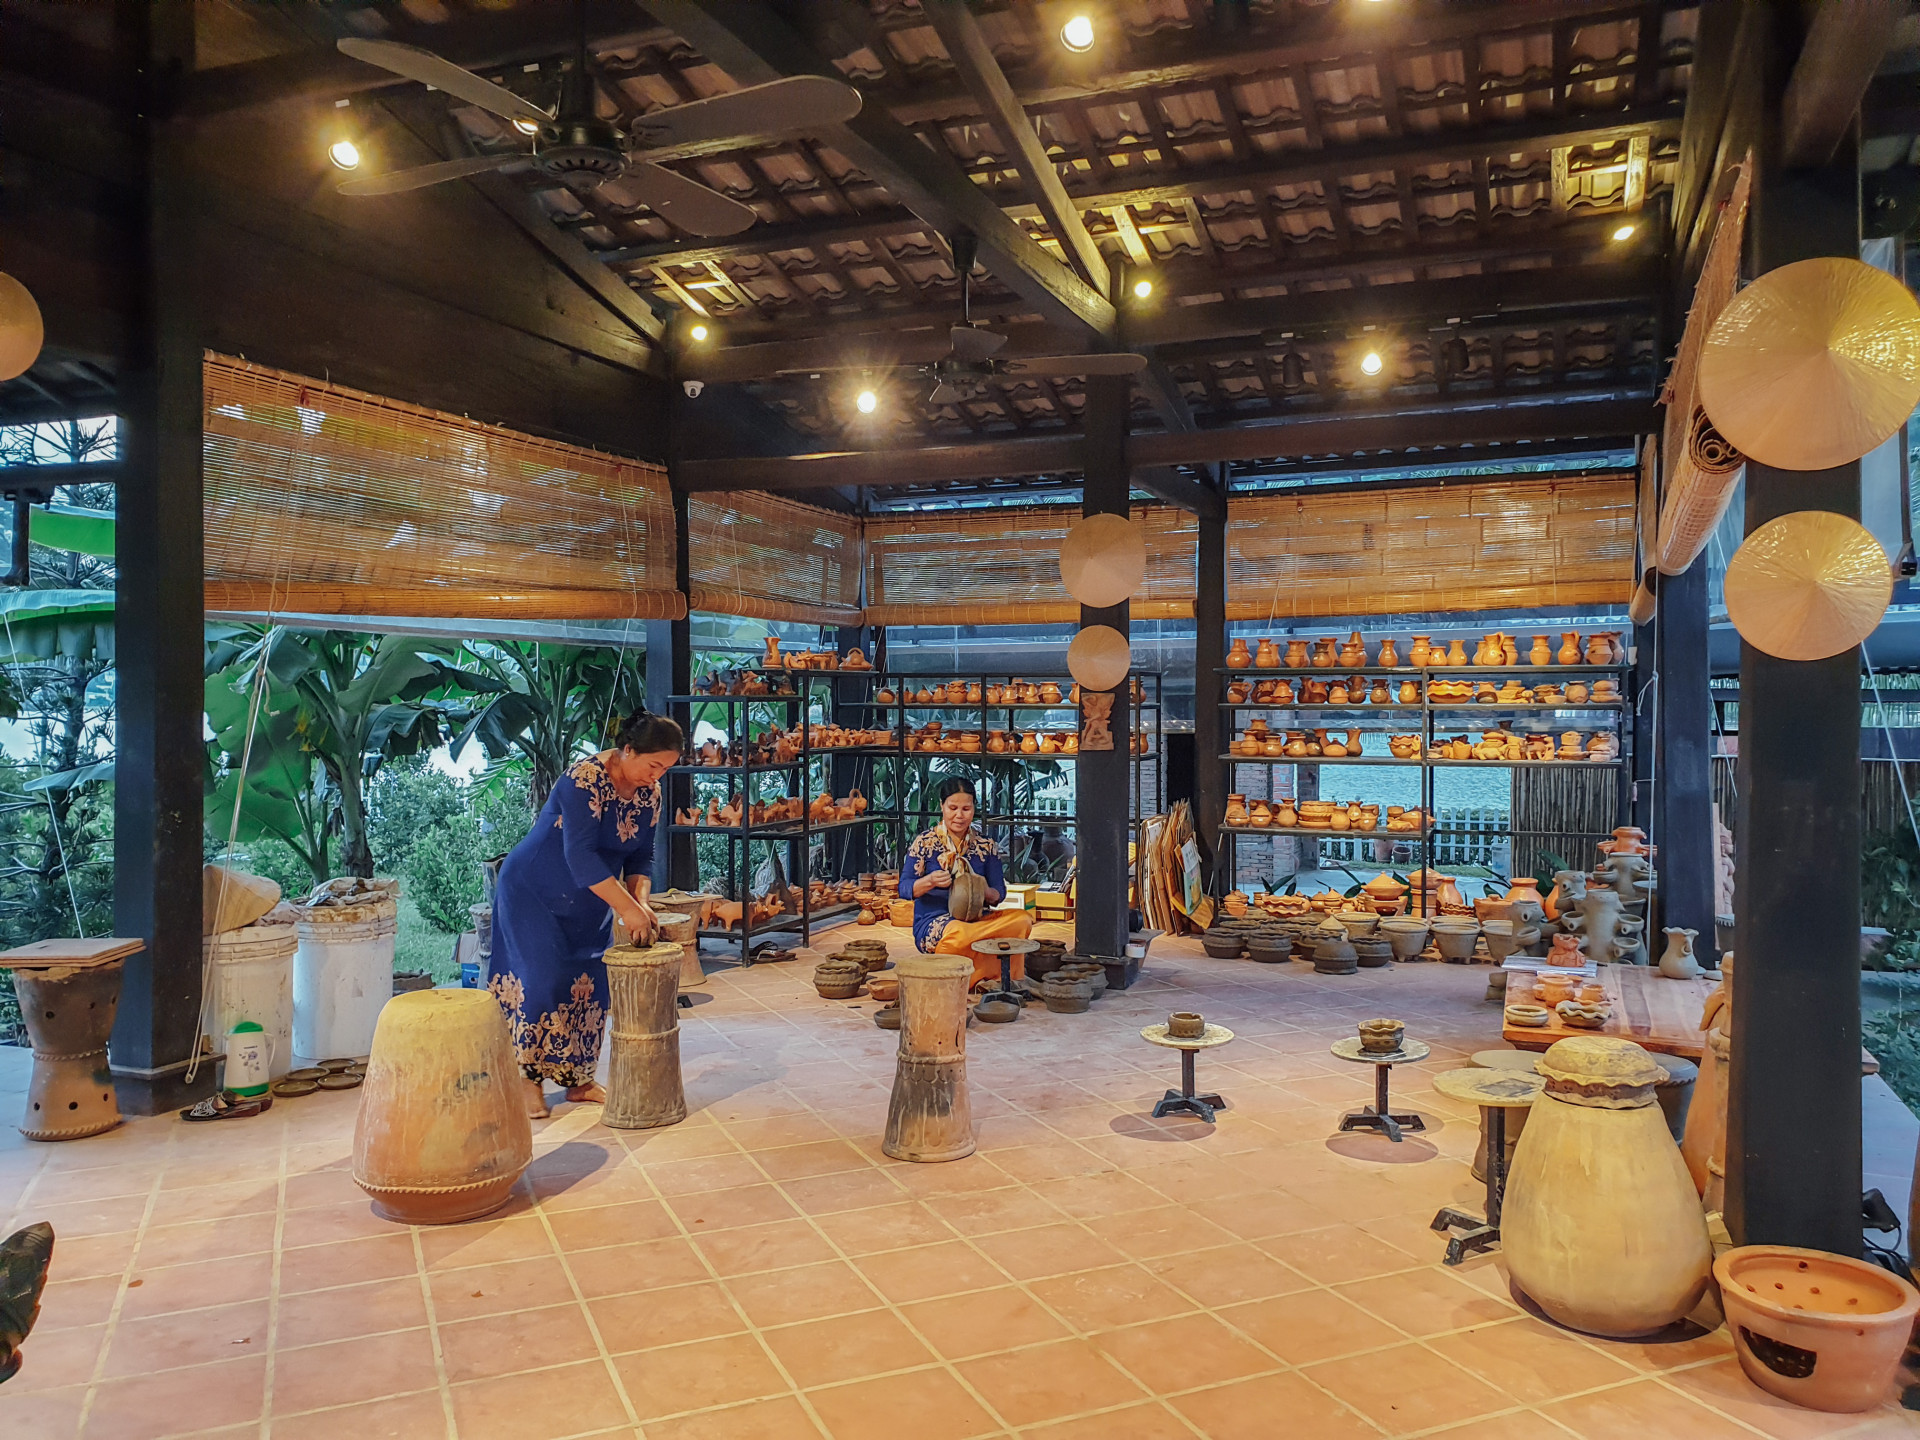 Nghệ nhân người Chăm trình diễn kỹ thuật làm gốm Chăm truyền thống tại Champa Island Nha Trang. (Ảnh chụp trước dịch Covid-19)